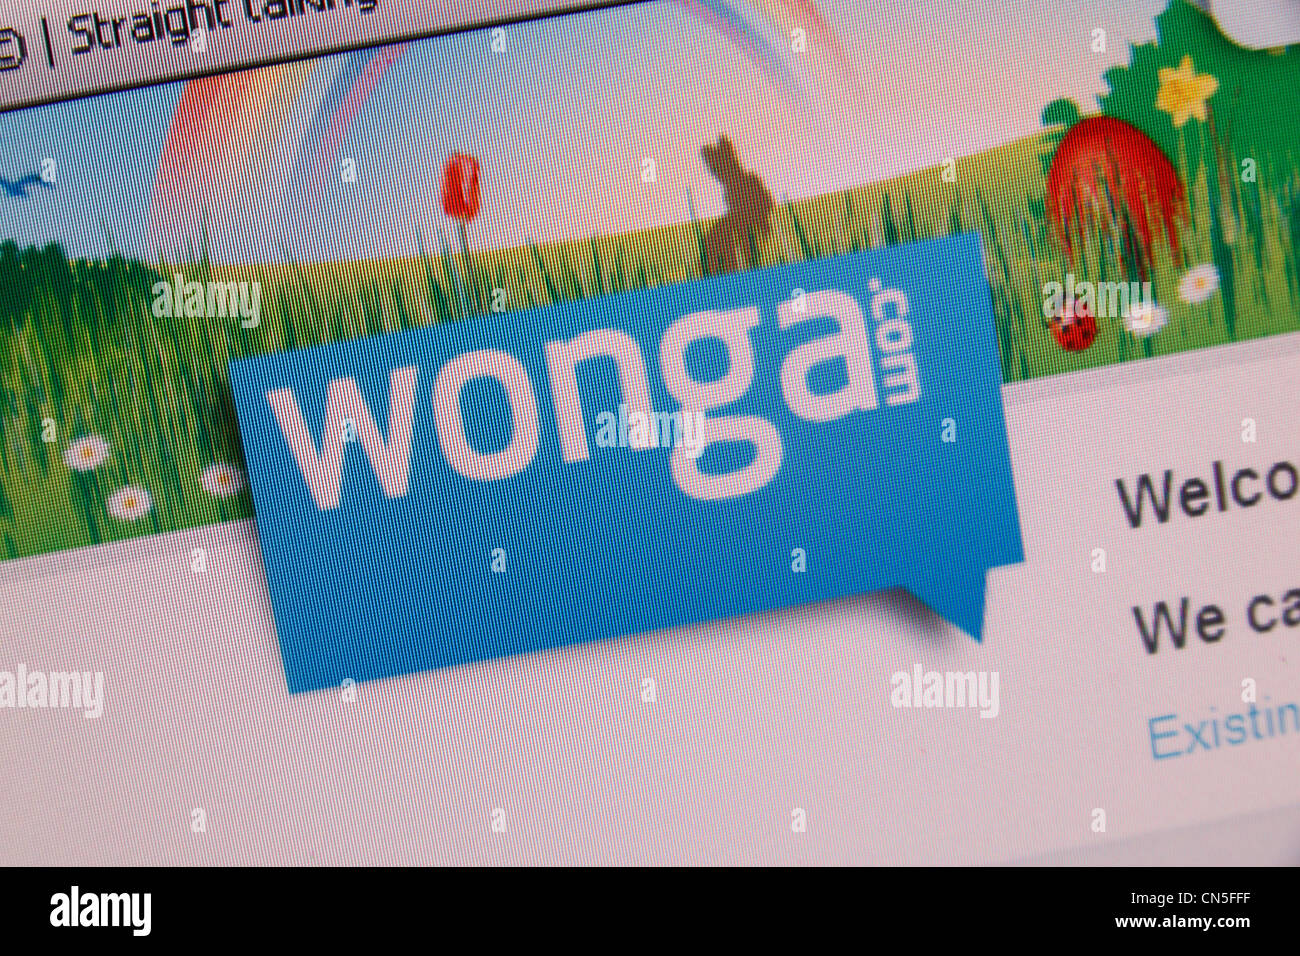 Una screenshot del Wonga.com sito web & logo, un payday loan company NEL REGNO UNITO. Foto Stock